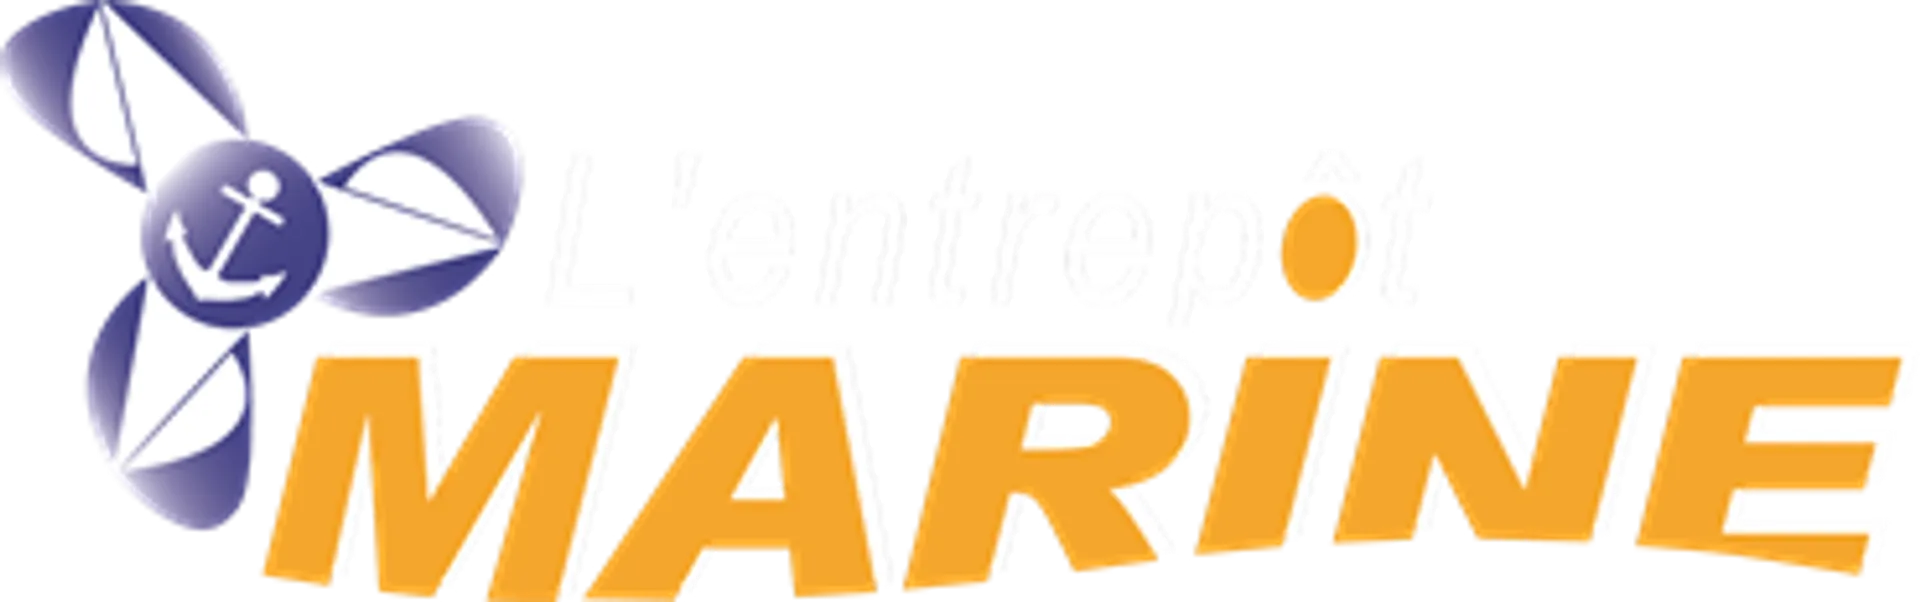 ENTREPOT MARINE logo de circulaire